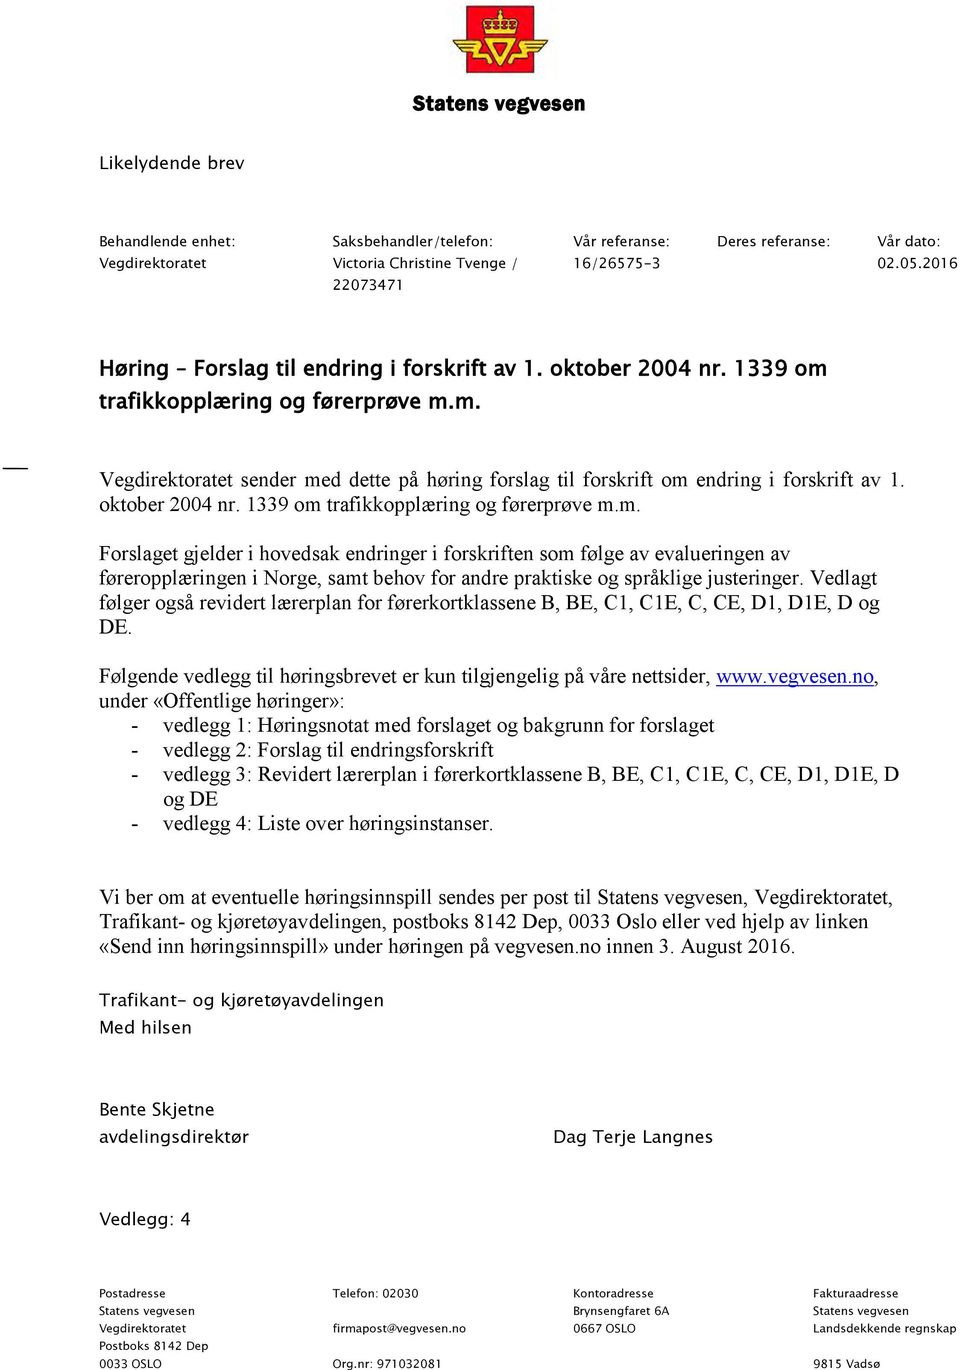 oktober 2004 nr. 1339 om trafikkopplæring og førerprøve m.m. Forslaget gjelder i hovedsak endringer i forskriften som følge av evalueringen av føreropplæringen i Norge, samt behov for andre praktiske og språklige justeringer.